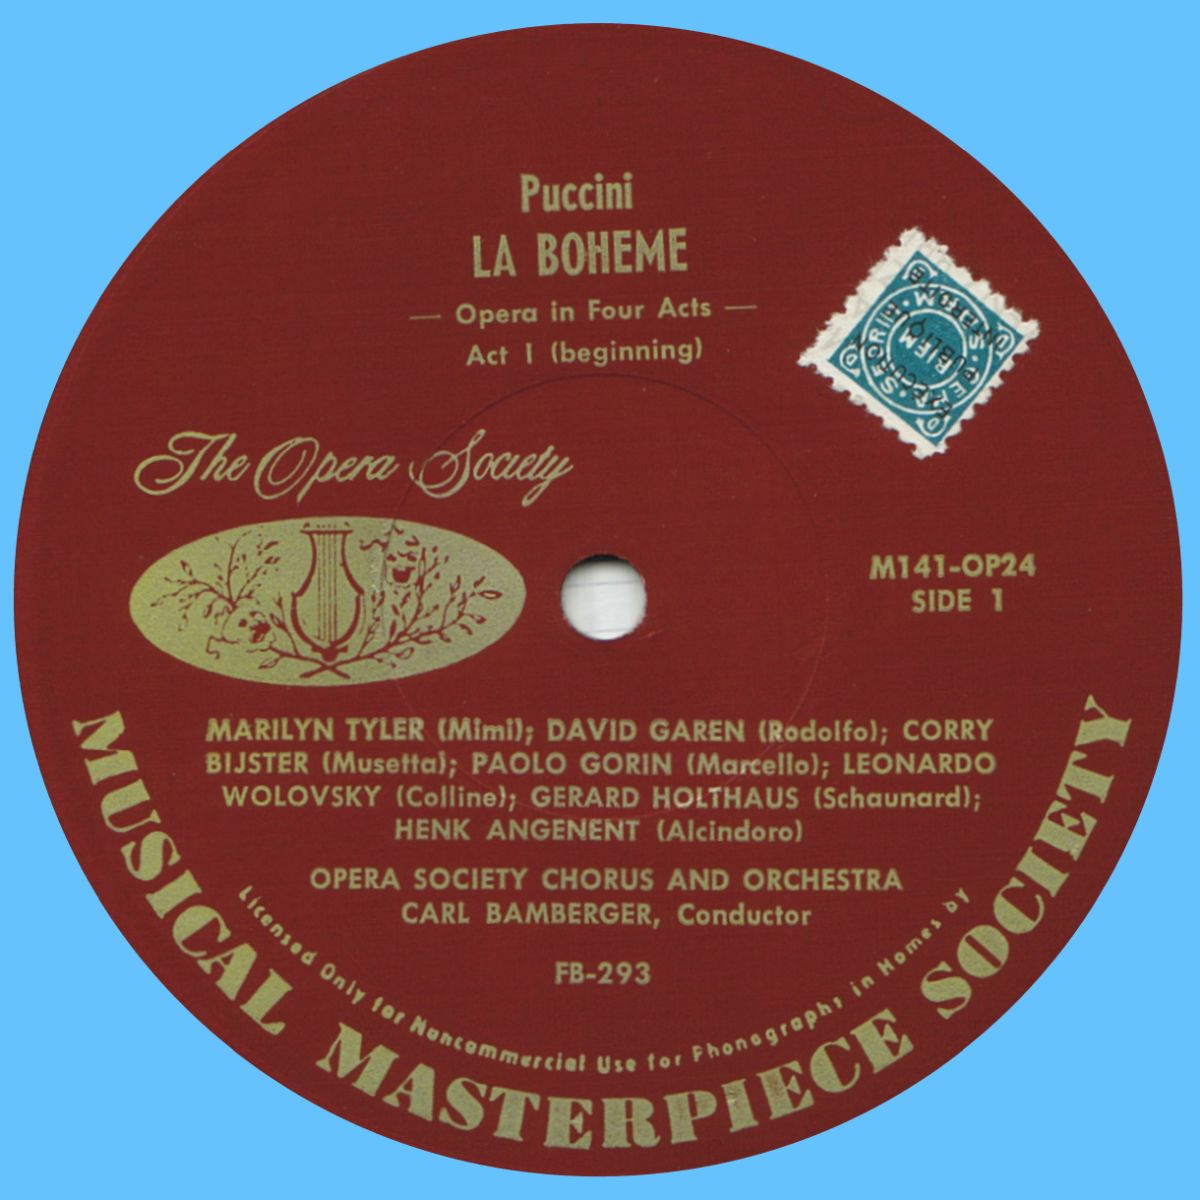 Musical Masterpiece Society» M141-OP24, étiquette recto du 1er disque